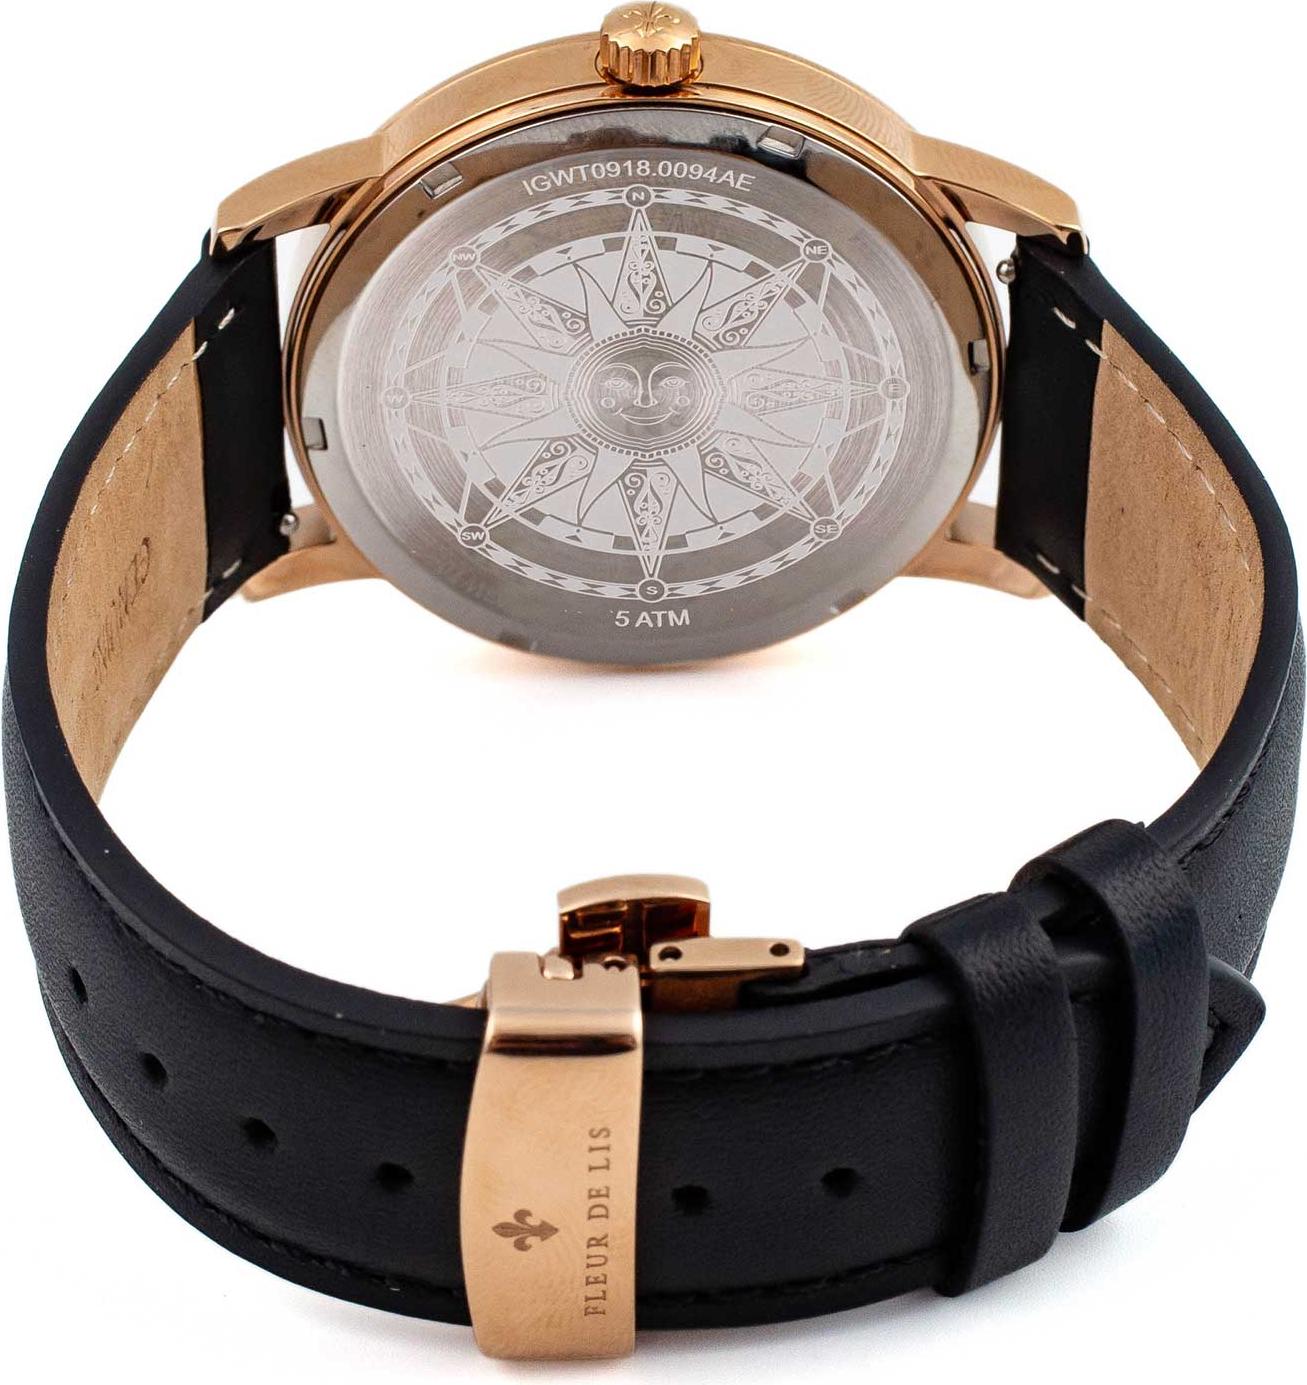 Đồng hồ nam Fleur De Lis ACE Moonphase-01 hàng chính hãng chống nước mặt shaphire 41mm dây da cao cấp